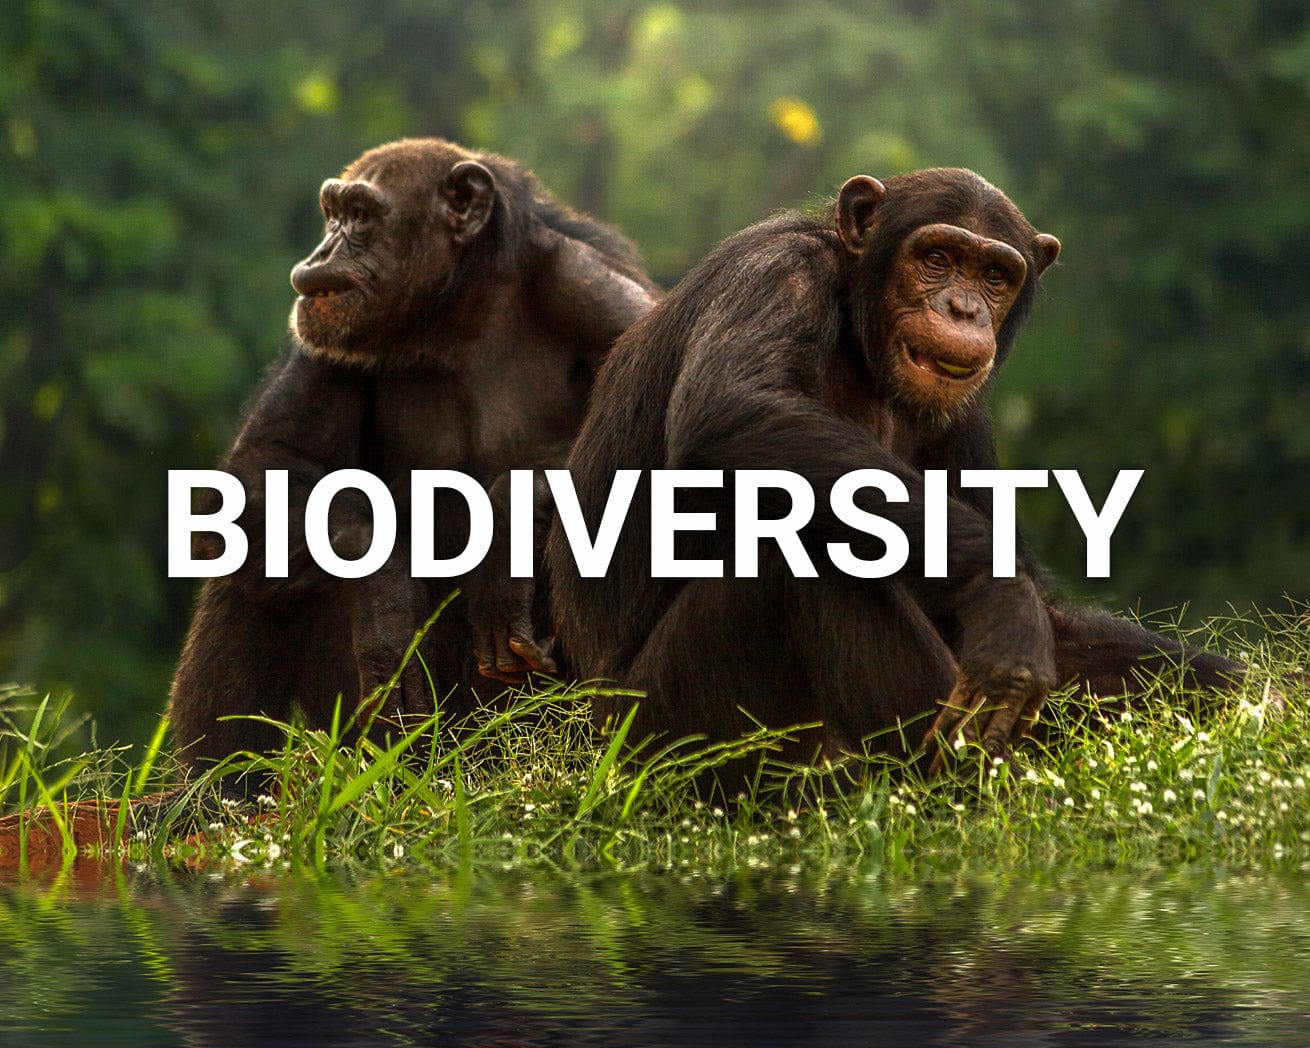 biodiversity main